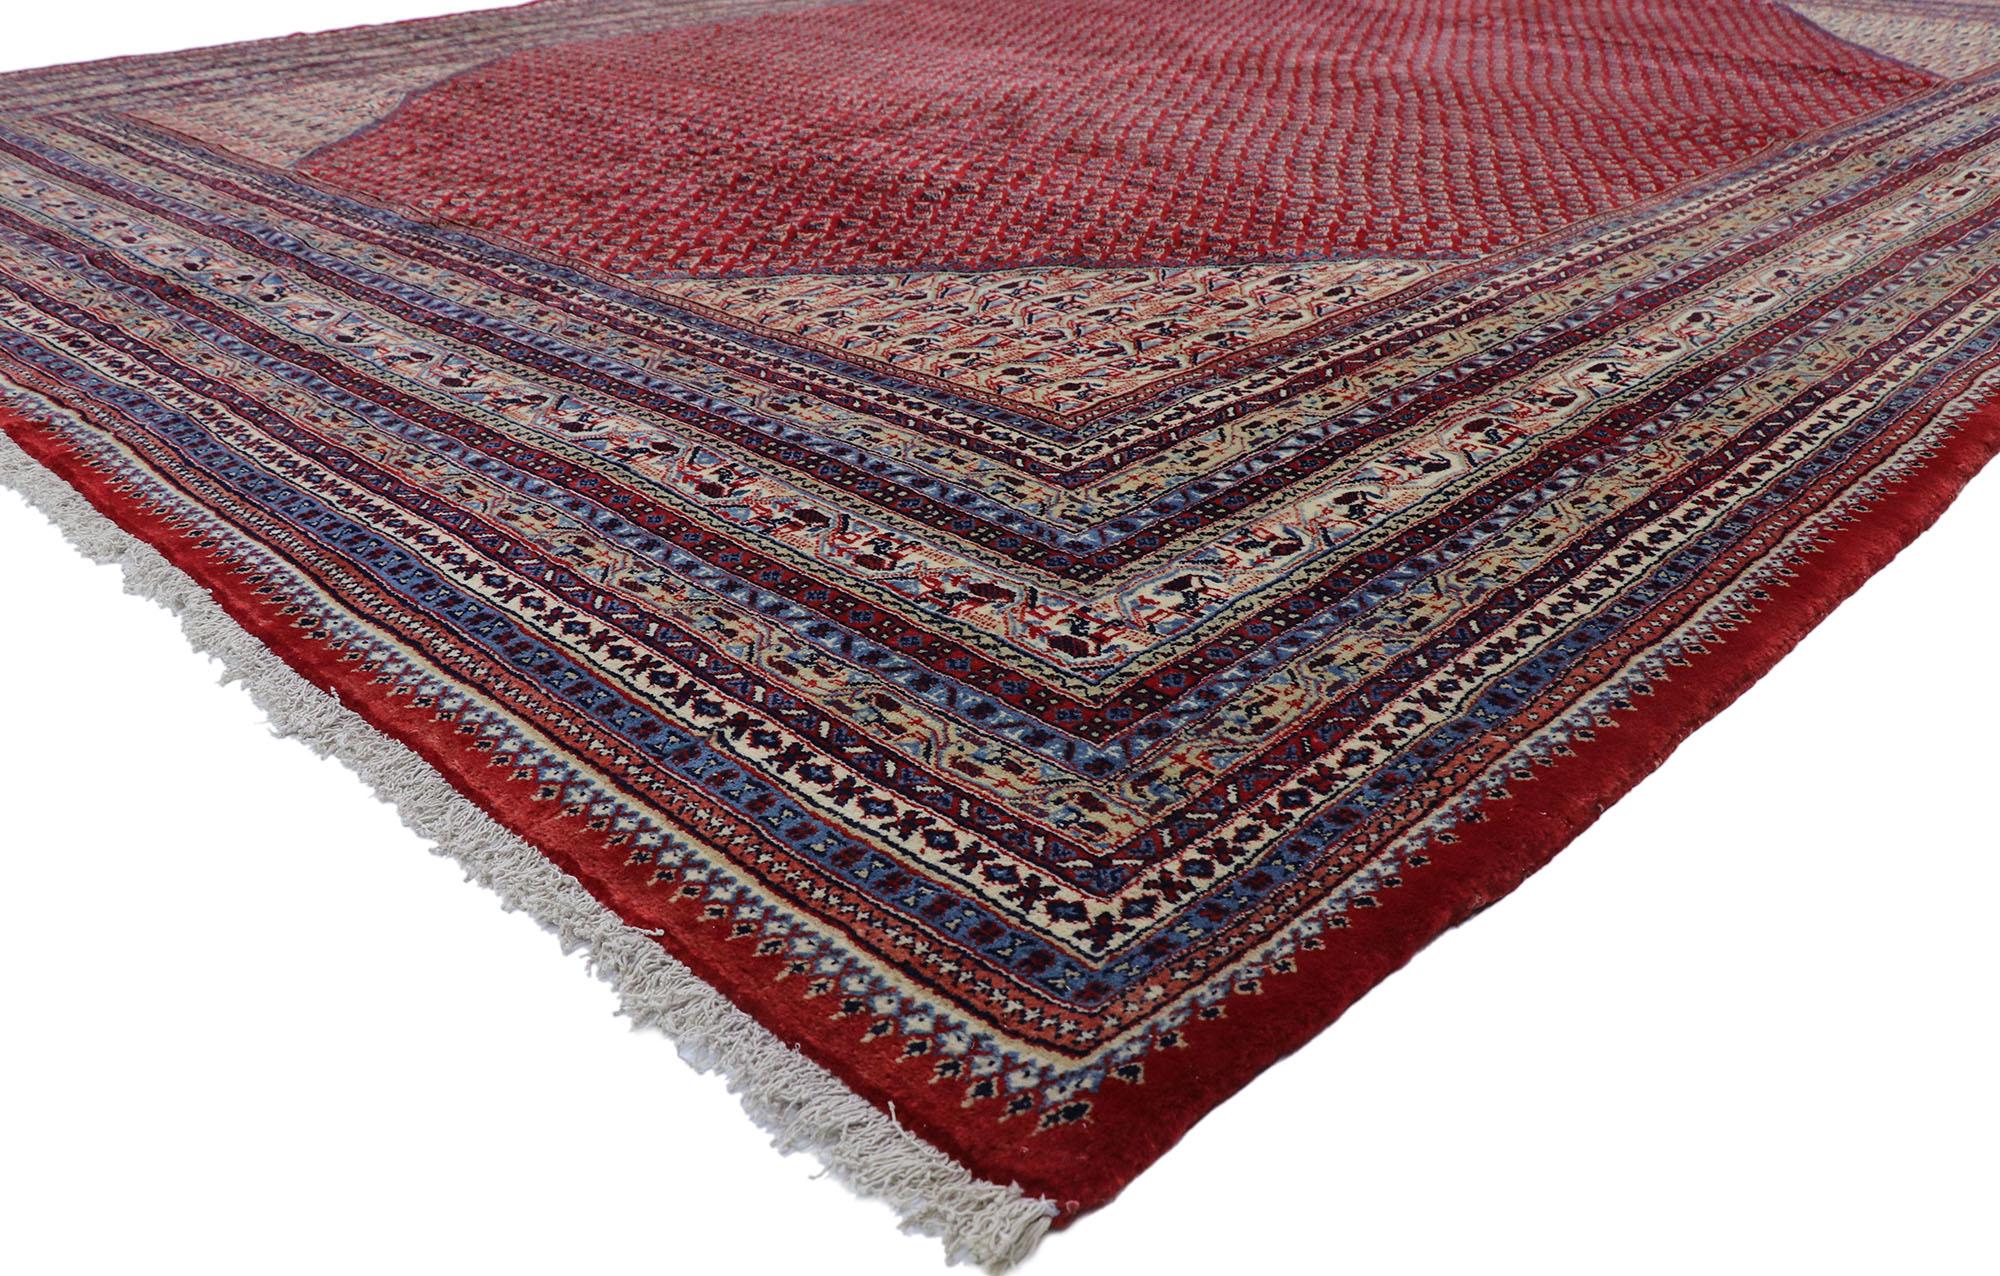 78064 Vieux tapis persan Sarouk Mir Boteh de style jacobéen 11'05 x 15'11. Avec son attrait saisissant et sa palette de couleurs rouges saturées, ce tapis Sarouk Mir Boteh persan vintage en laine nouée à la main ressemble à un somptueux velours